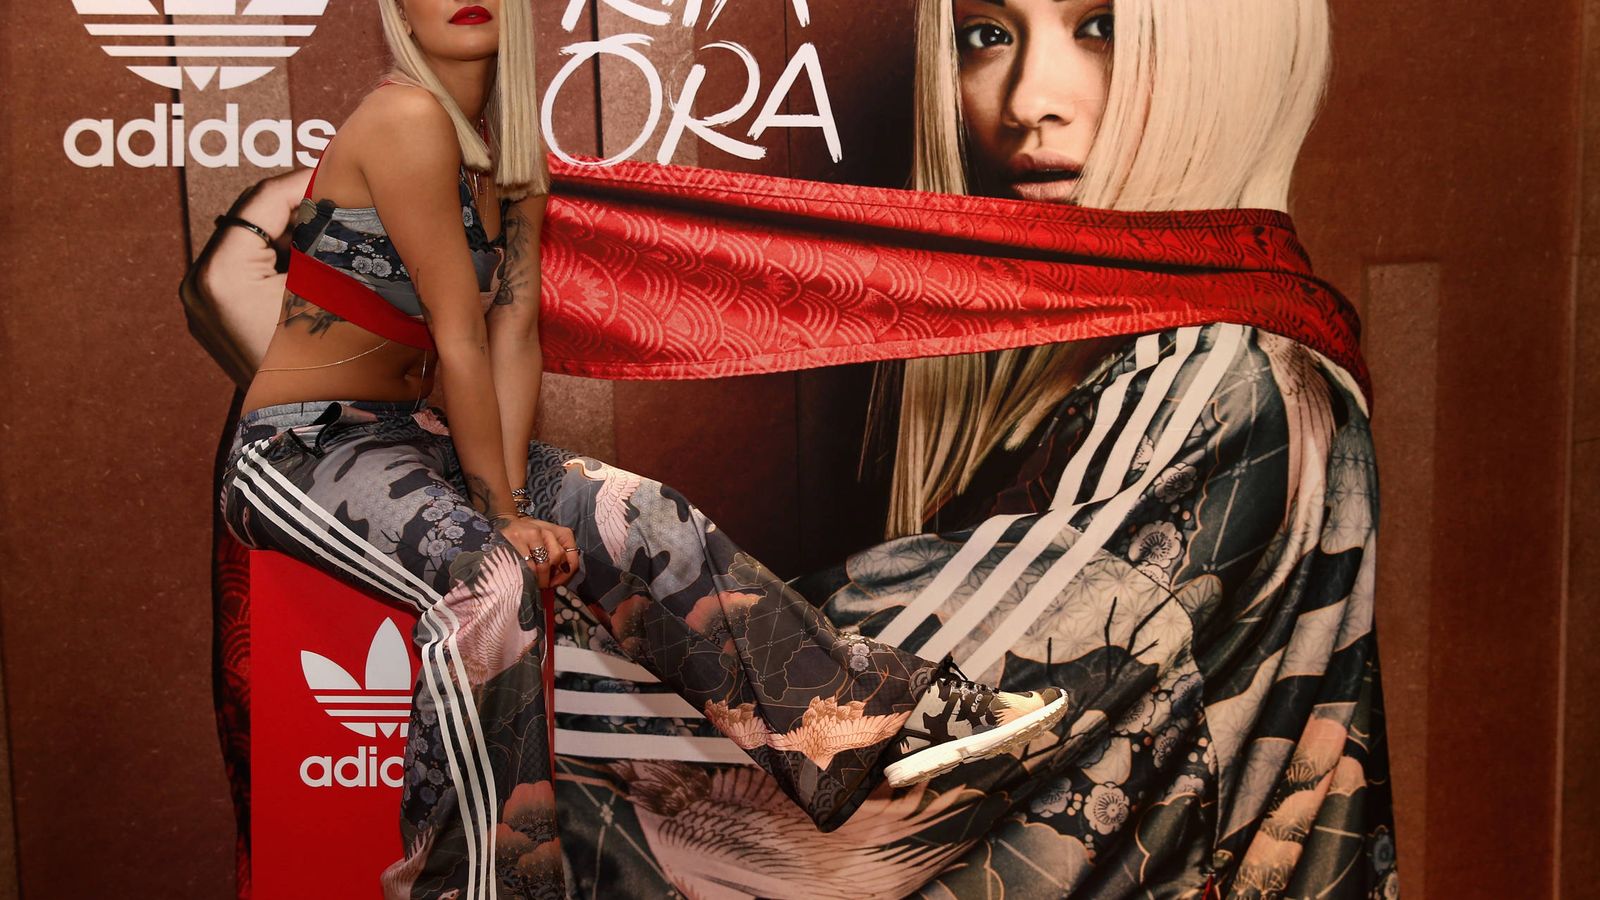 Foto: La cantante Rita Ora posa durante la presentación de sus adidas Originals en Dubai (Warren Little/Getty Images)